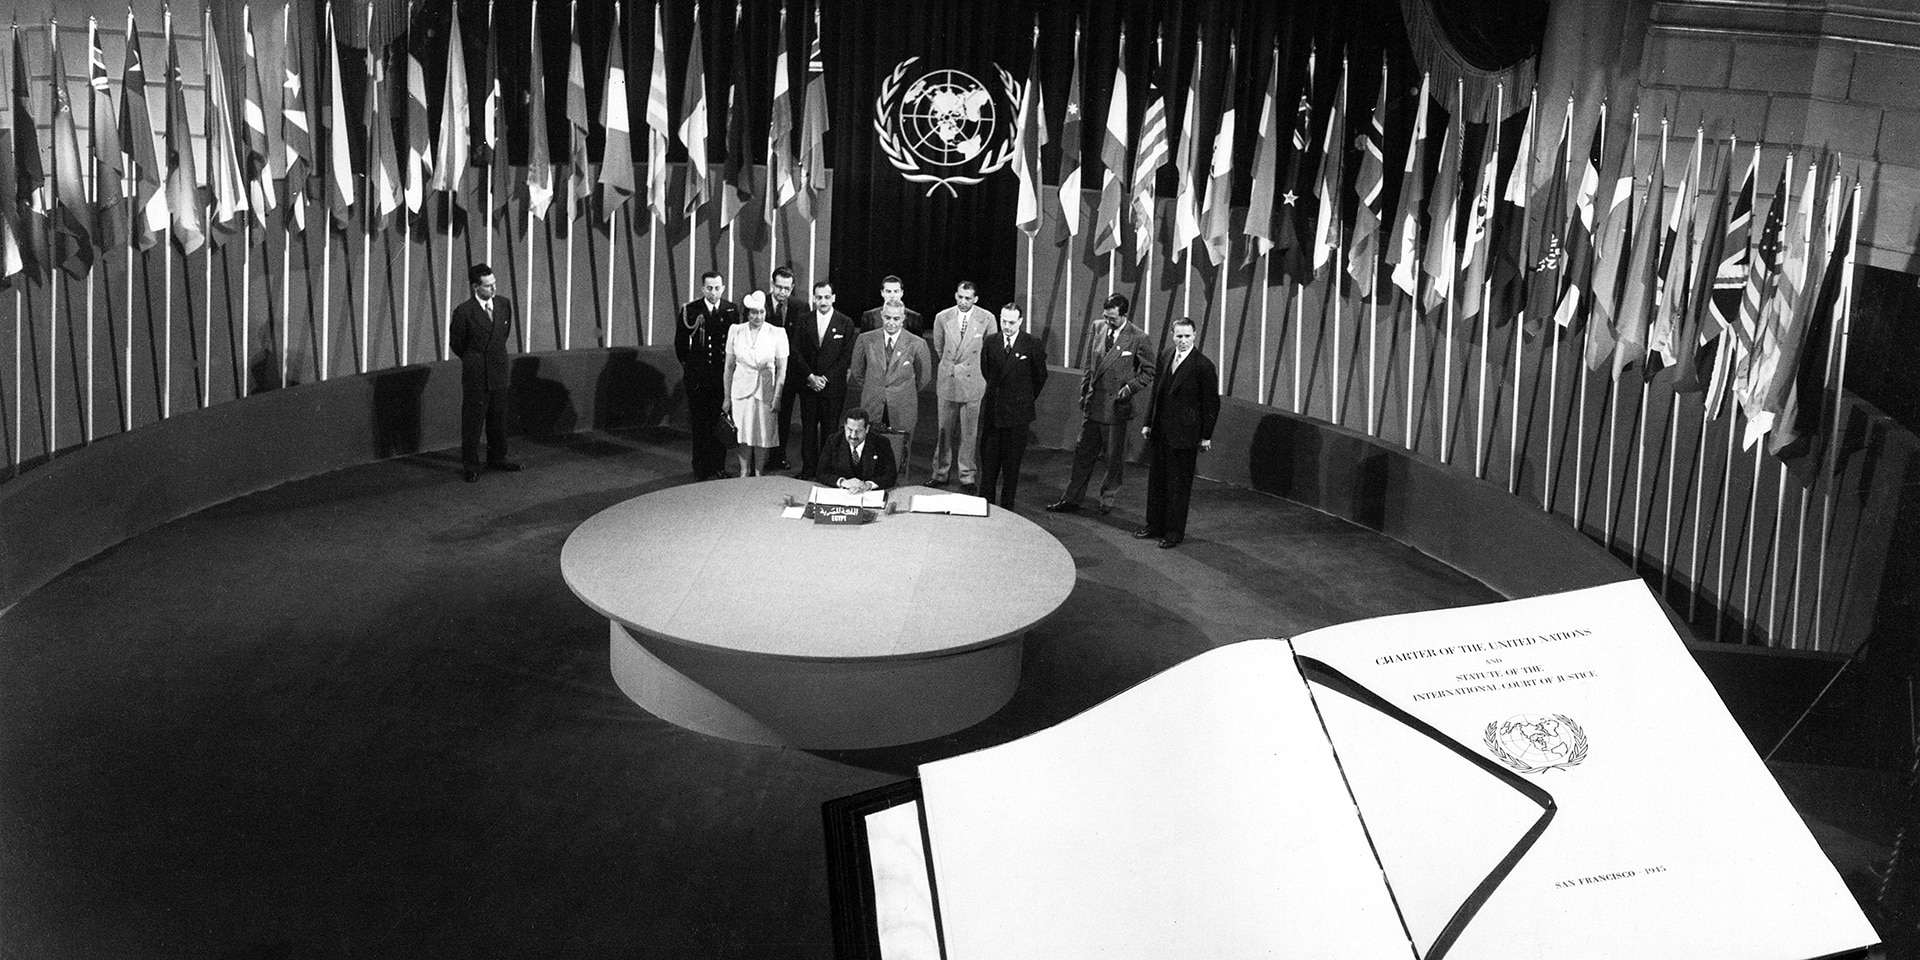  Der Vertreter Ägyptens unterzeichnet die Charta der Vereinten Nationen – im Vordergrund sieht man gross die Charta.